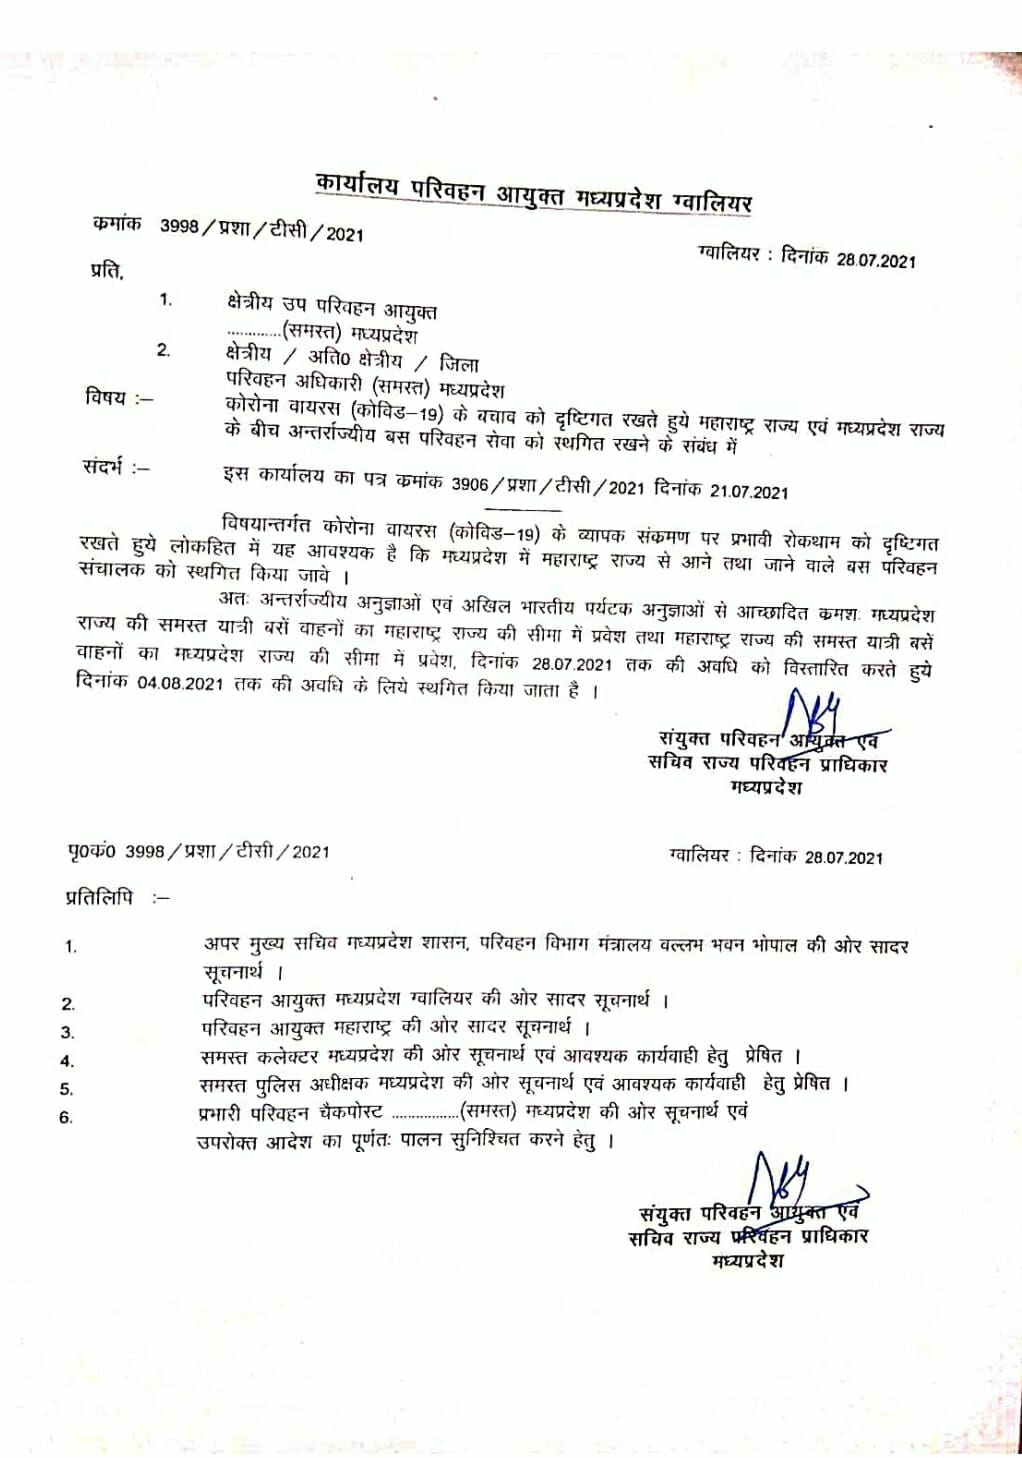 MP Transport: महाराष्ट्र से बसों के आवागमन पर 4 अगस्त तक प्रतिबंध